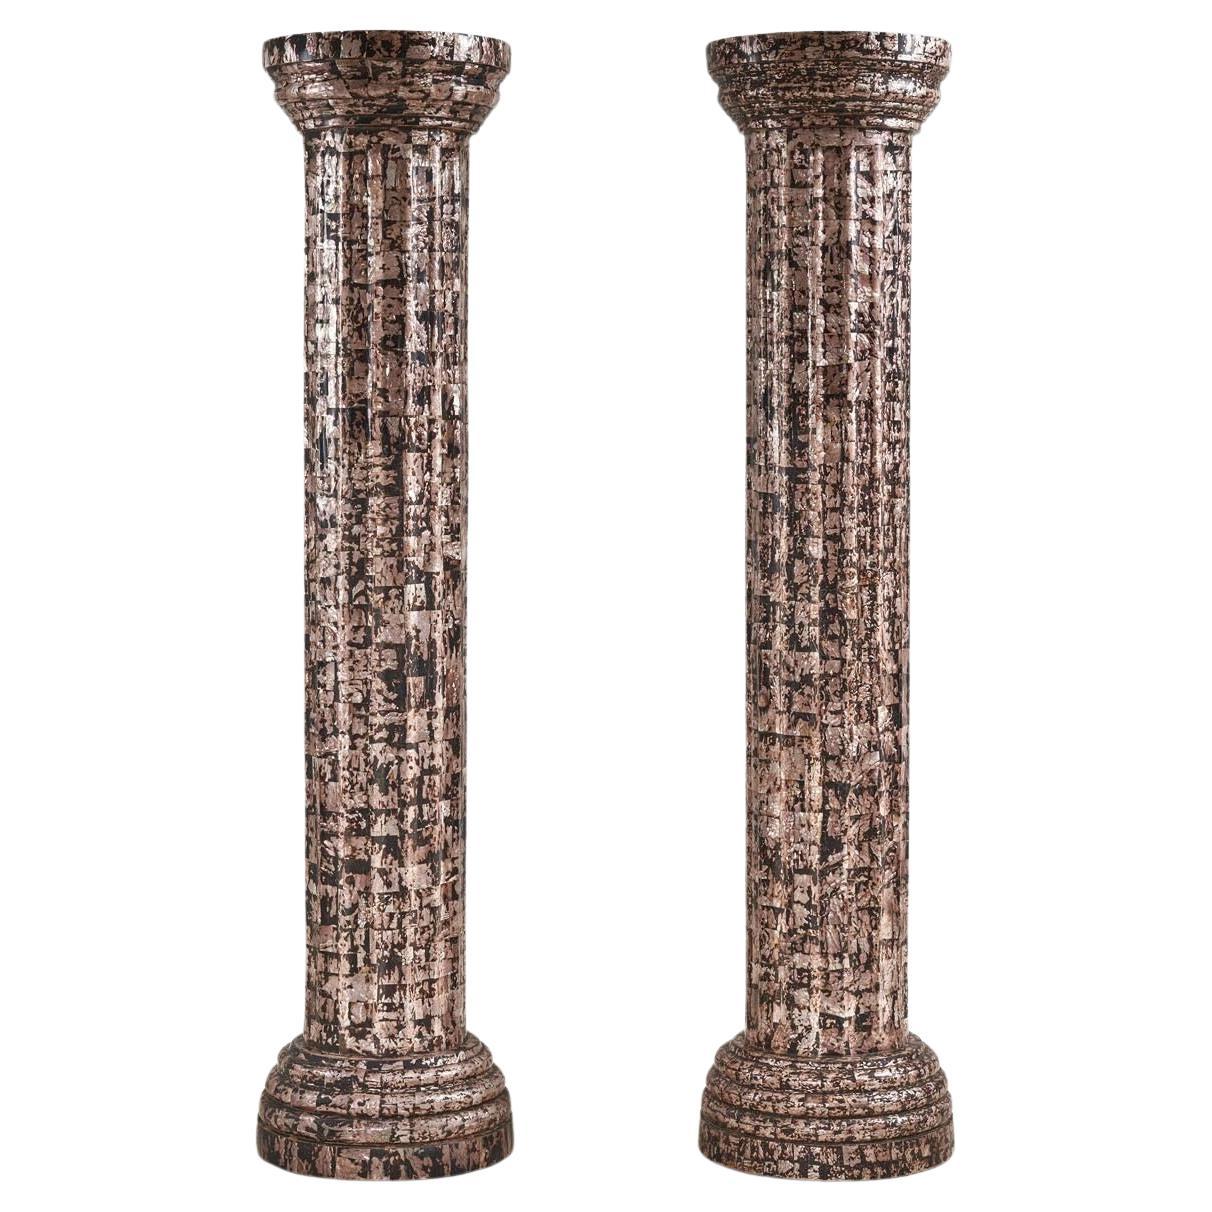 Monumentales colonnes cannelées continentales tesselées en nacre, 1970